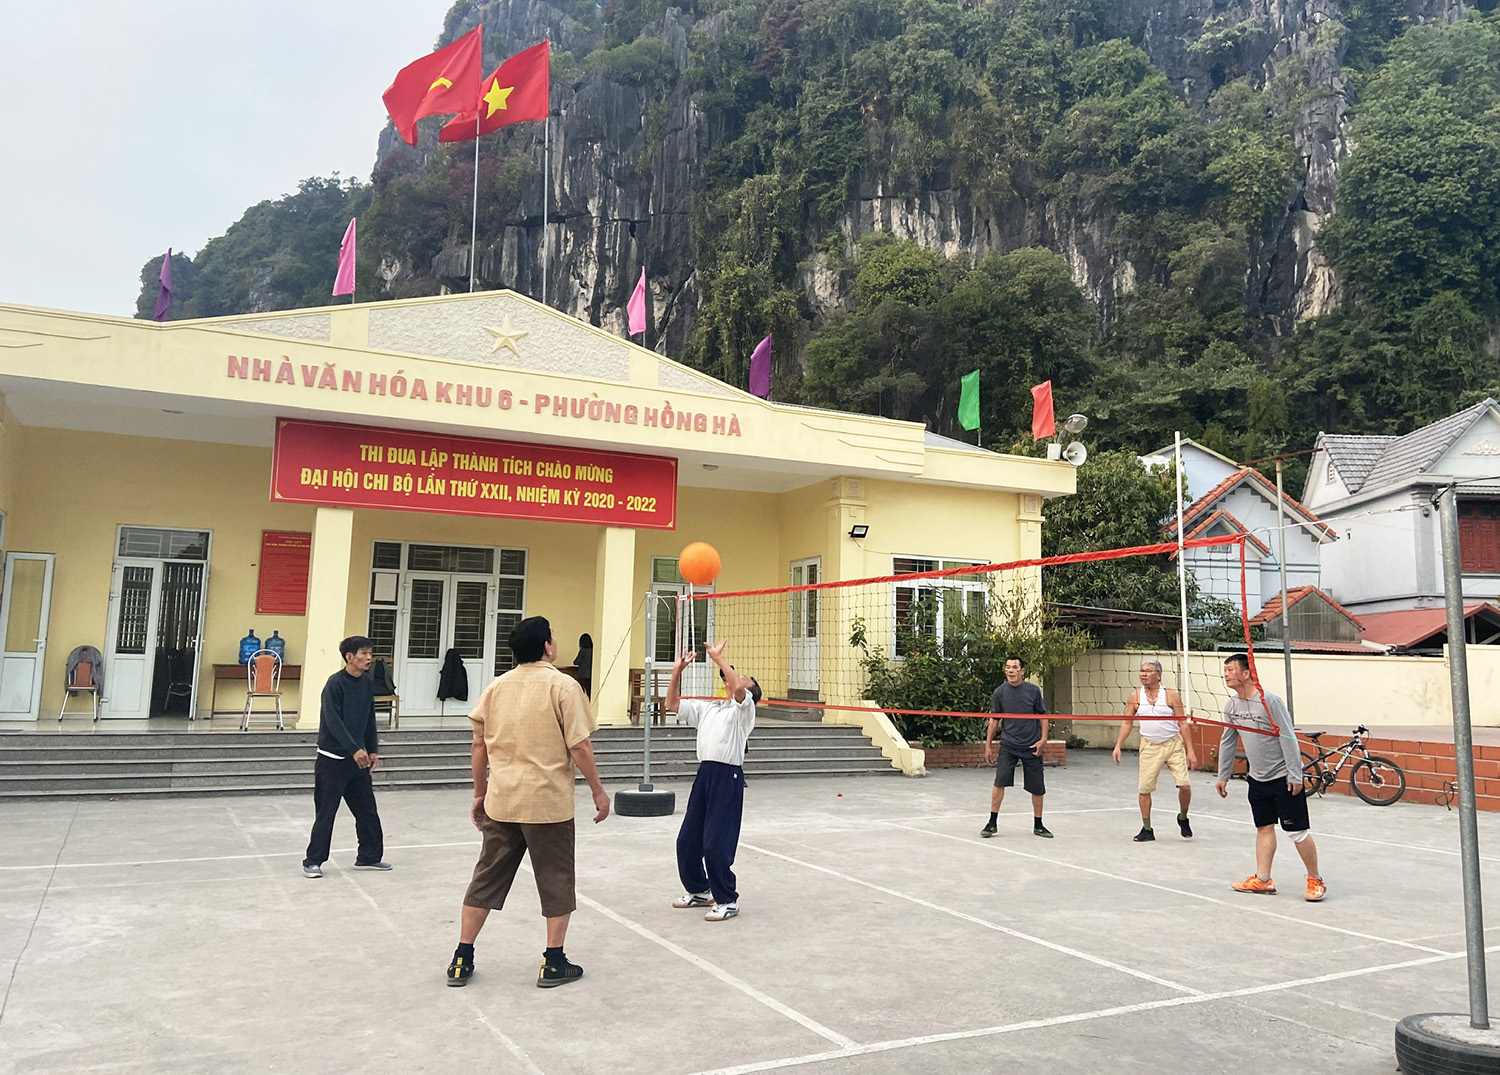 Phong trào thể dục thể thao của người dân khu 6, phường Hồng Hà (TP Hạ Long) diễn ra sôi nổi tại Nhà văn hóa khu.